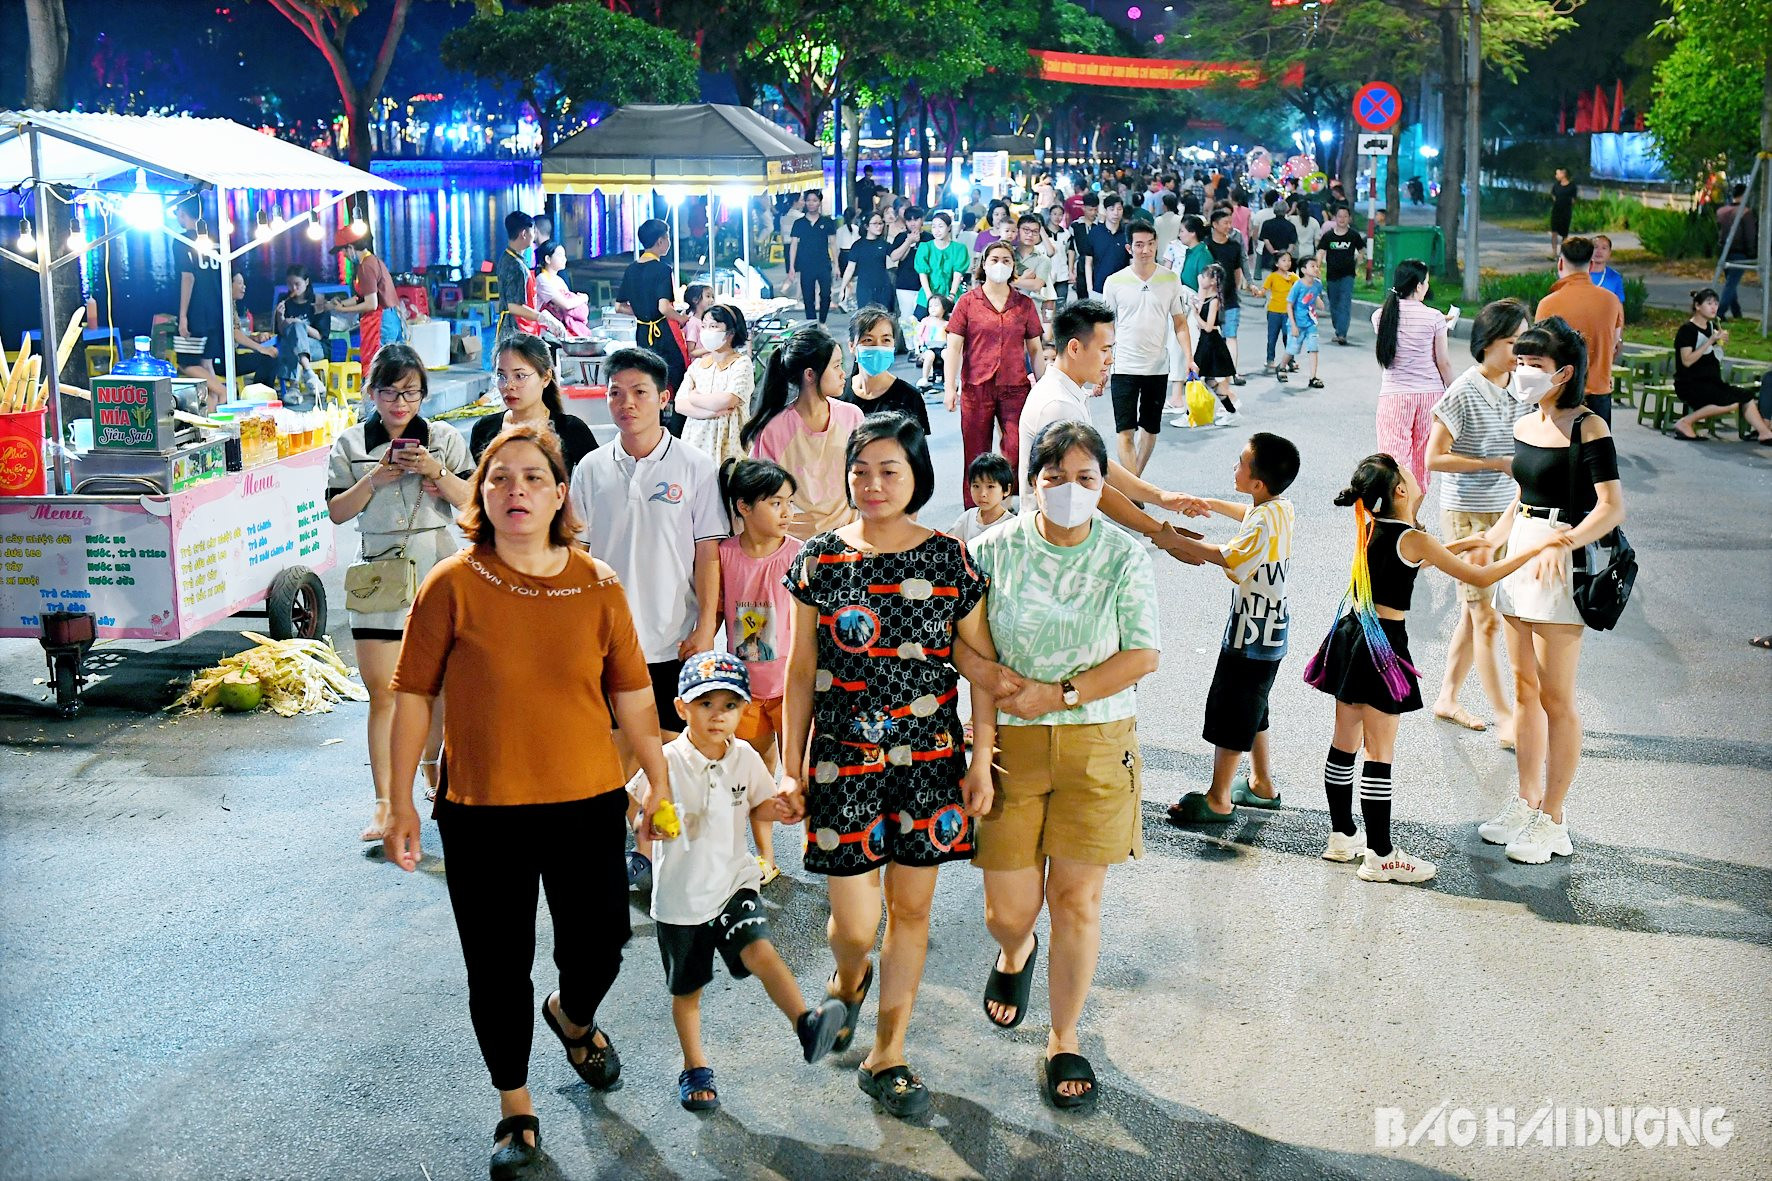 Phố đi bộ, chợ đêm Bạch Đằng là điểm đến của người dân, du khách mỗi dịp cuối tuần